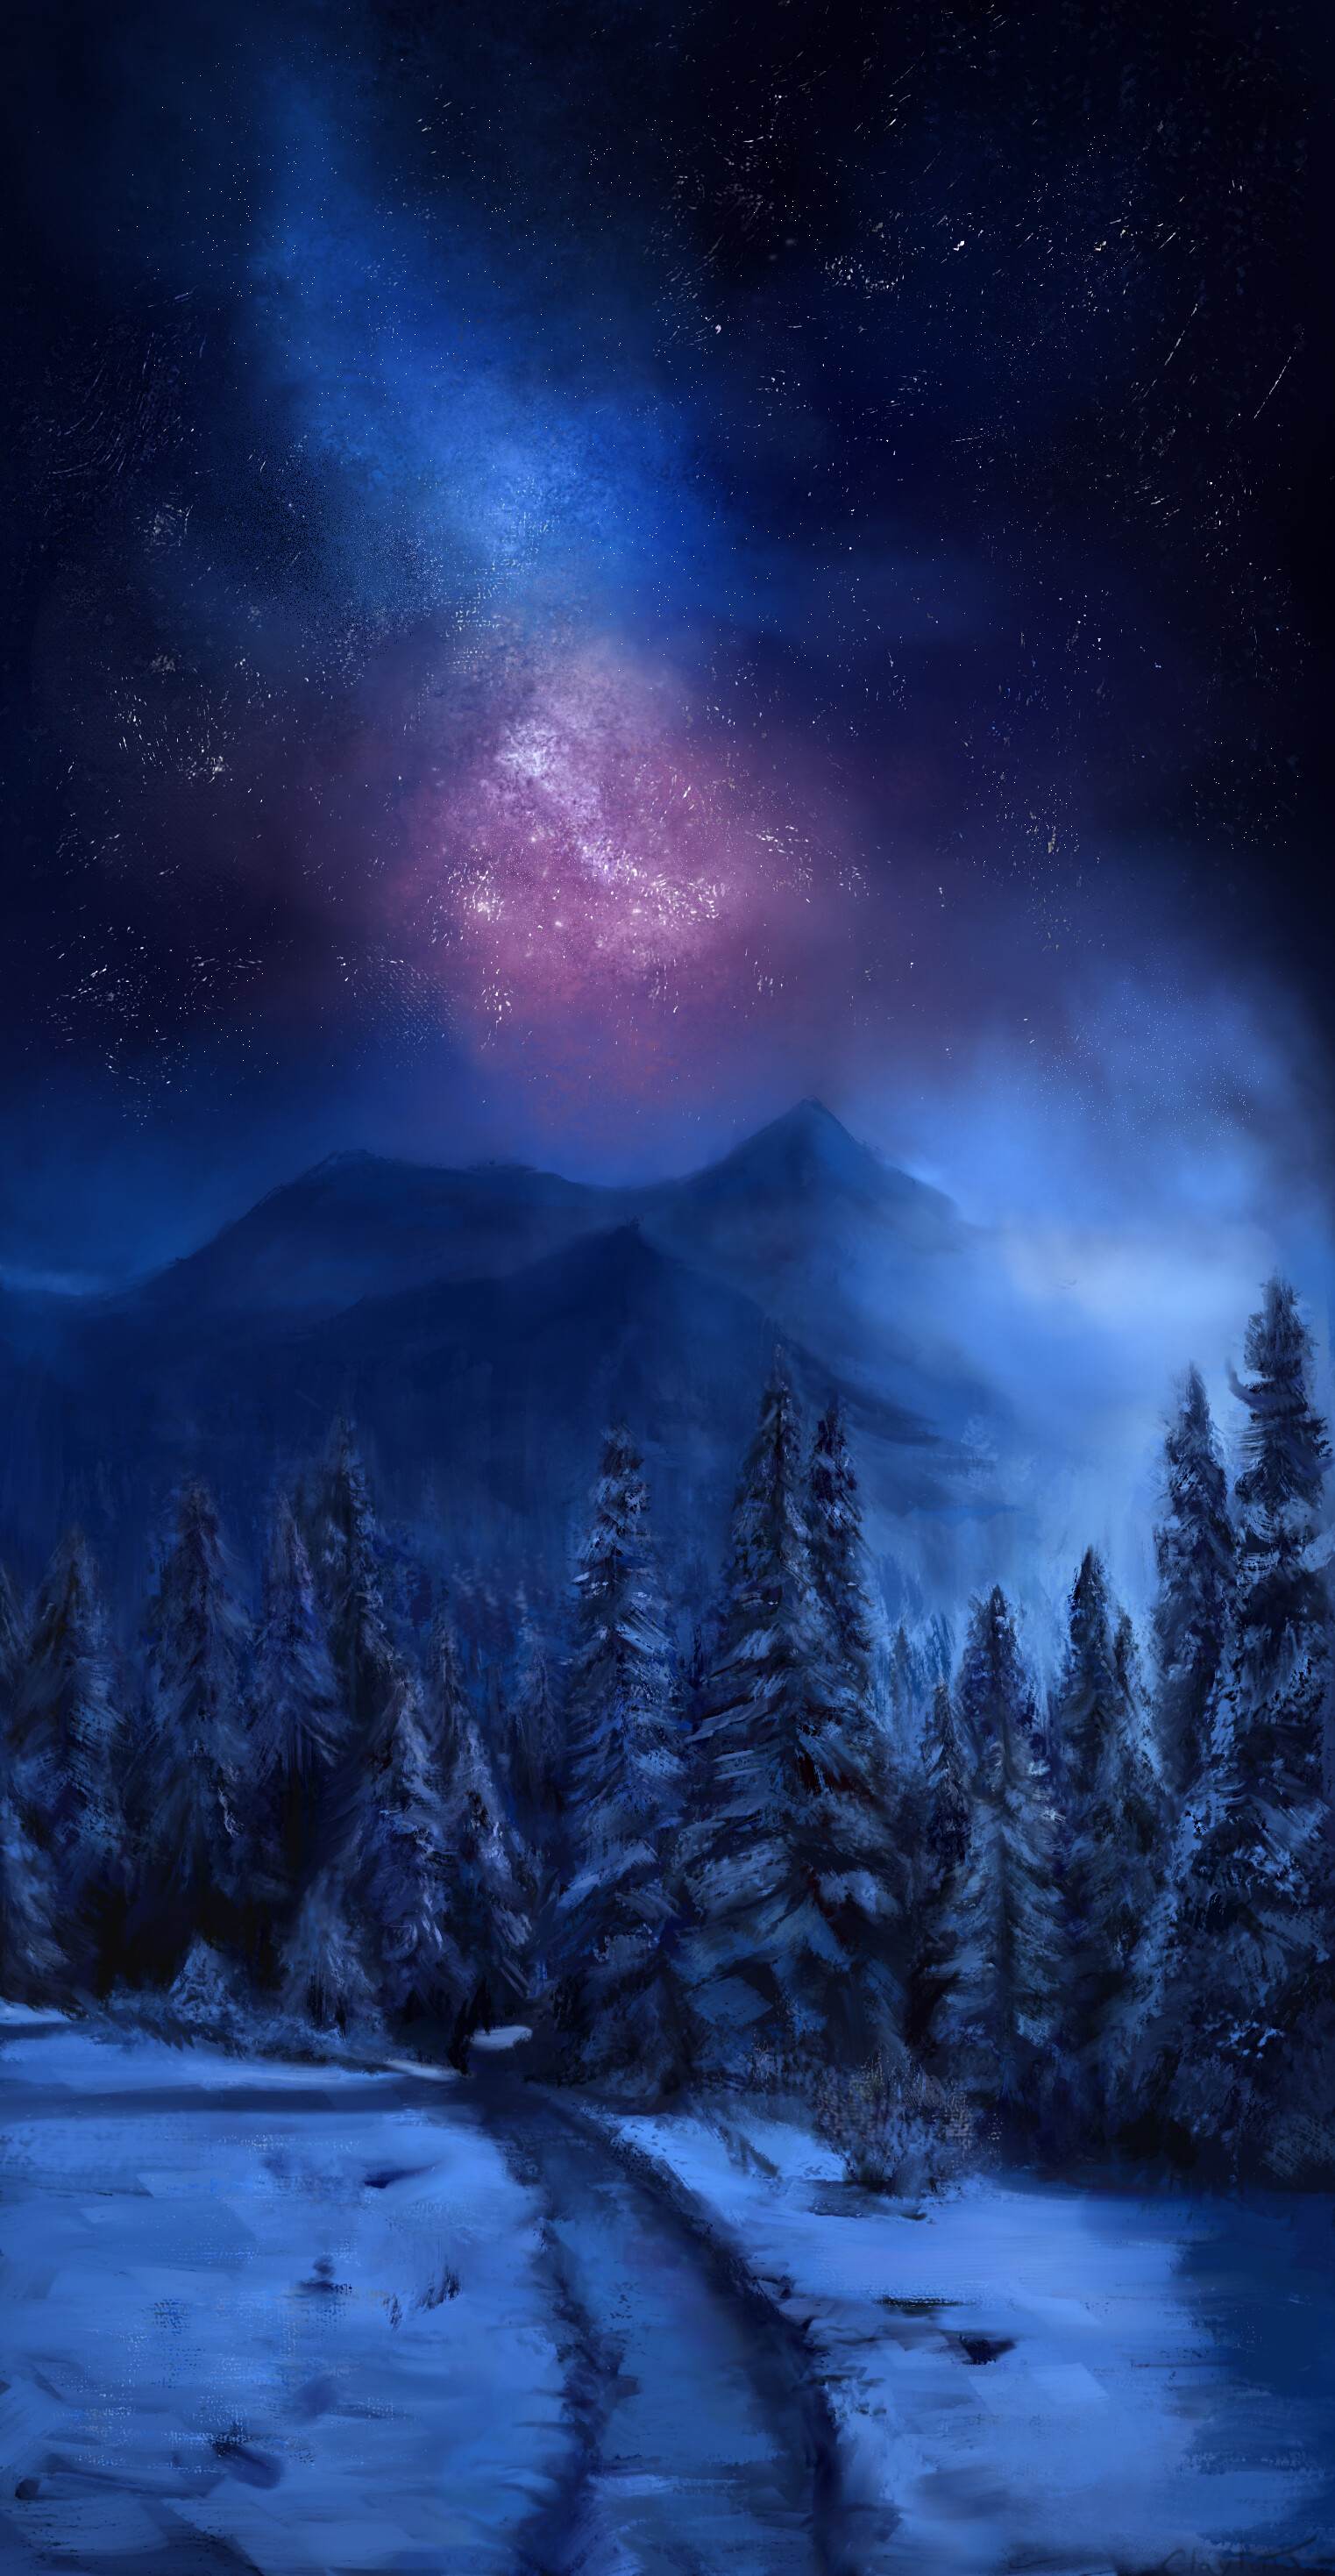 ArtStation - Winter Landscape